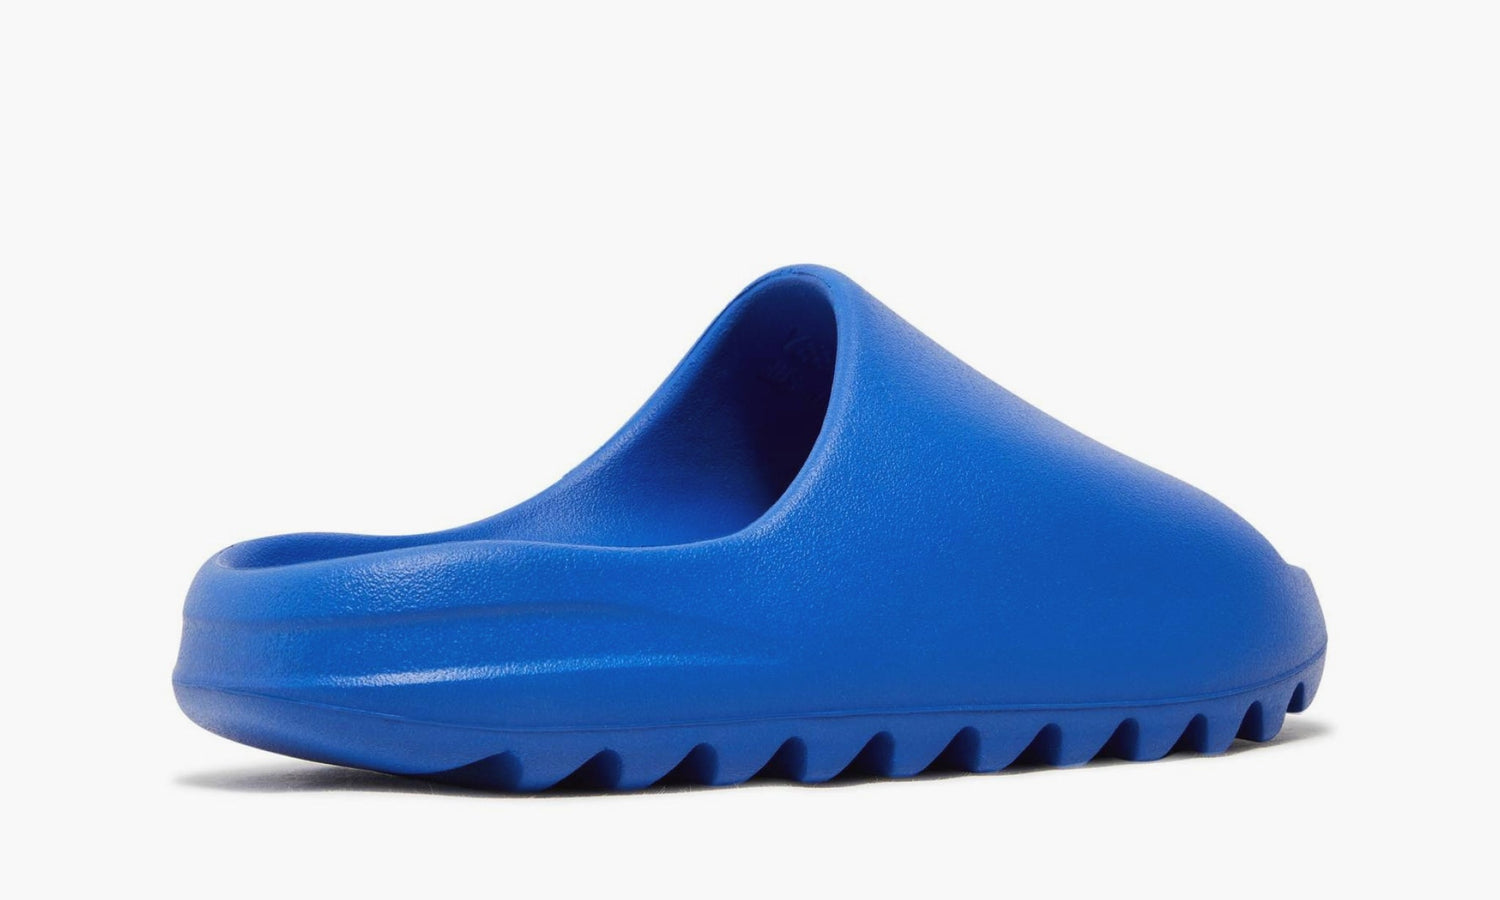 Adidas Yeezy Slide “Azure” - ID4133 | Grailshop